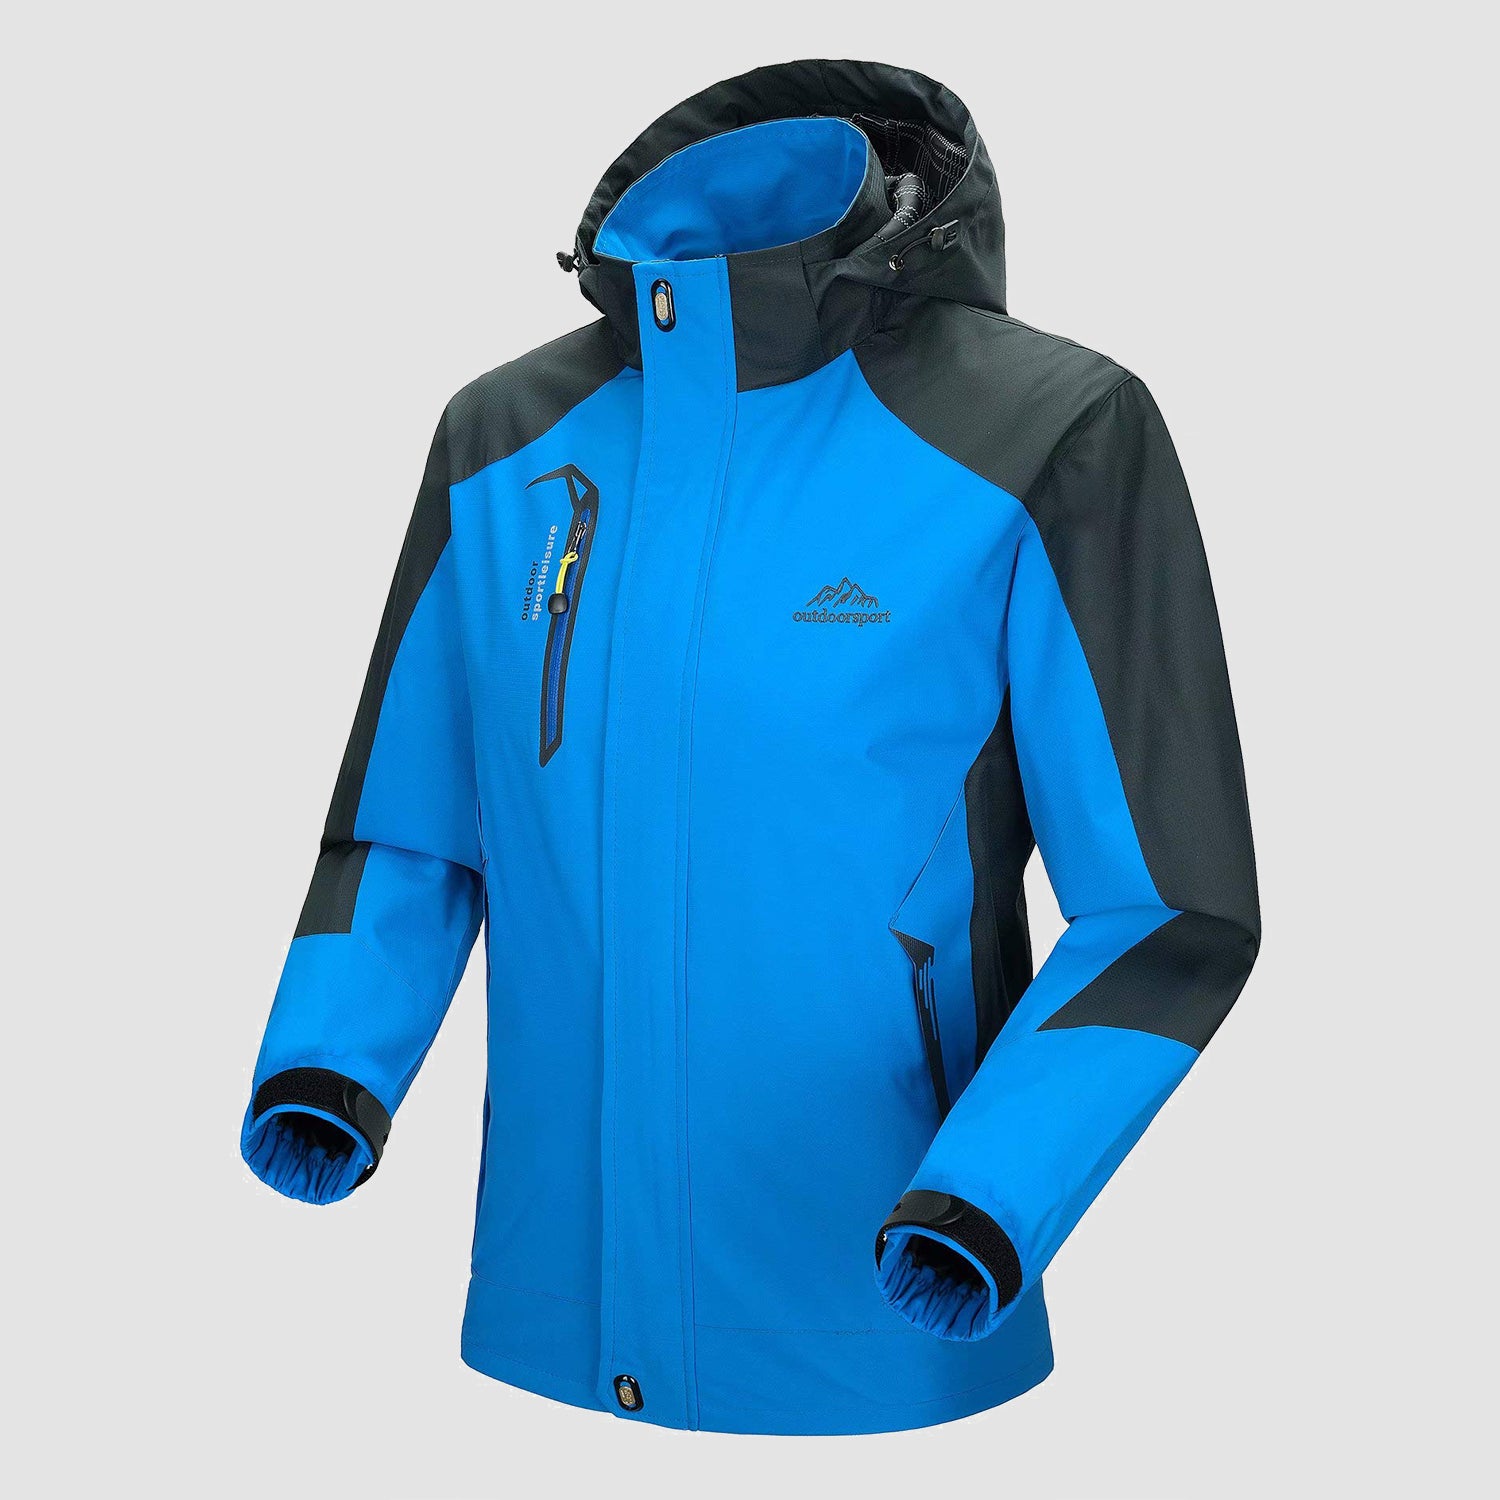 MAGCOMSEN Men's Lightweight Windbreaker Rain Jacket Raincoat with  Detachable Hood for Hiking Fishing Activewear(Fluorescent Green) - Magcomsen